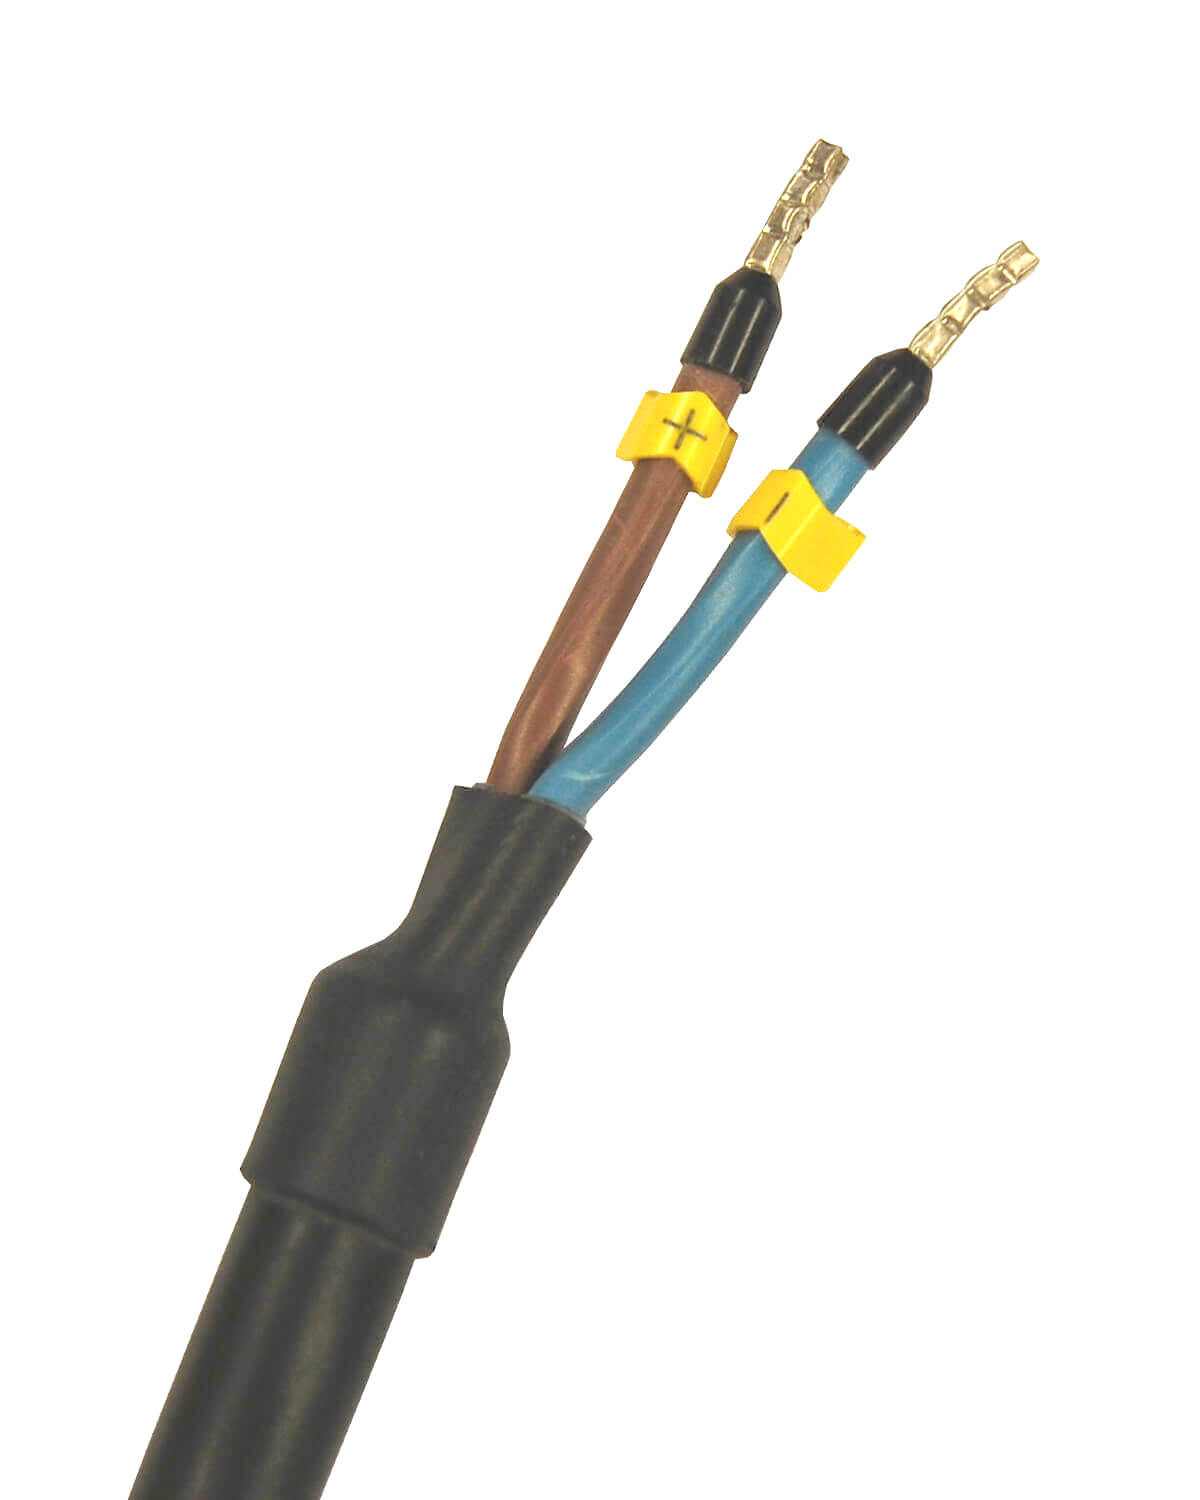 Ein schwarz-gelbes Kabel mit zwei Drähten, entwickelt für die PURION 2500 36W UV-C-Desinfektionsanlage Trinkwasser, hergestellt von der PURION GmbH.